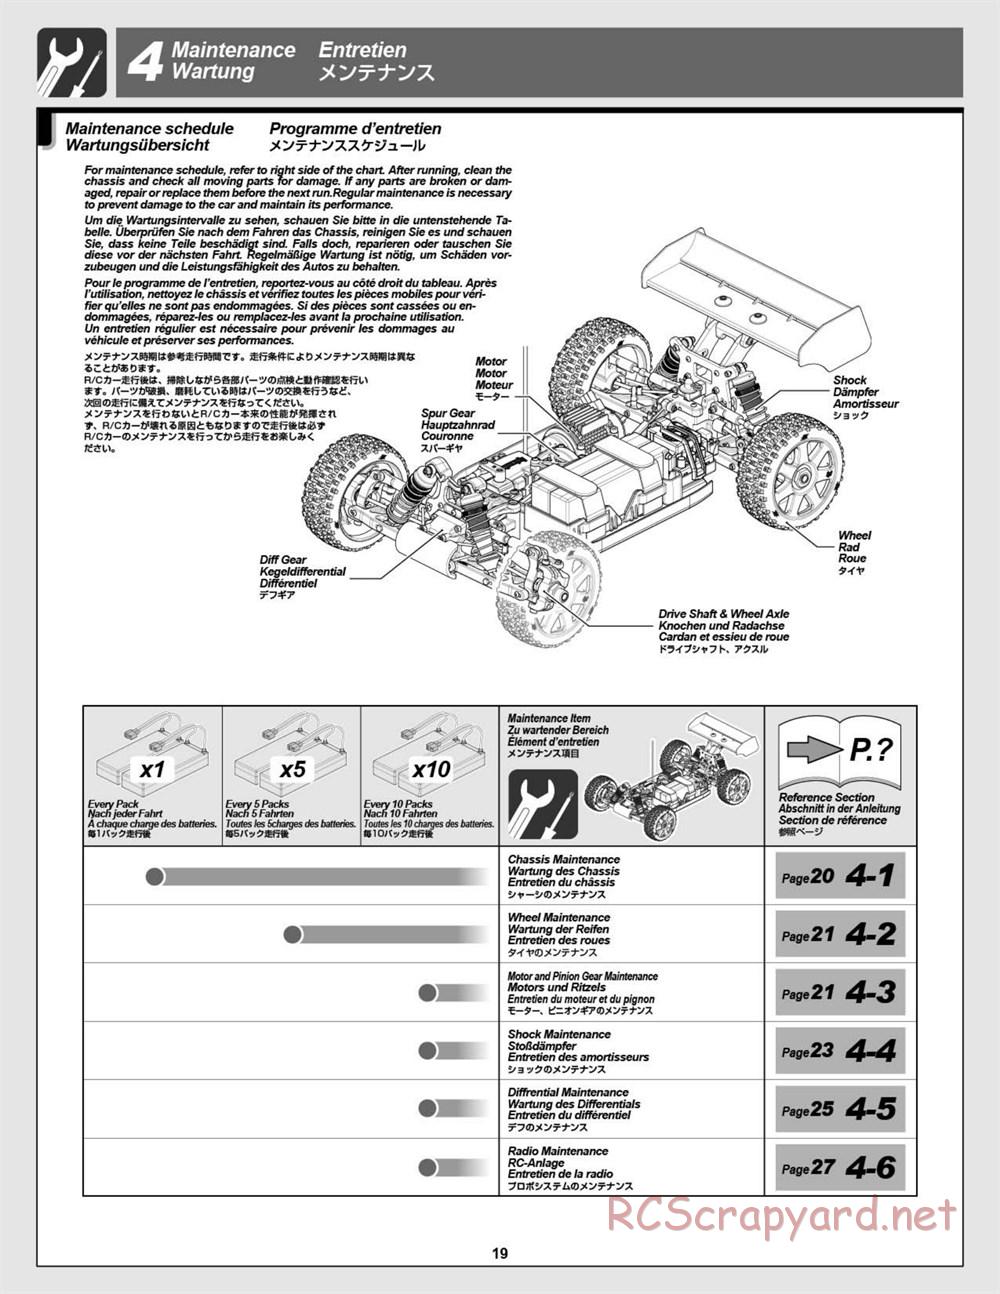 HPI - Vorza Flux HP - Manual - Page 19